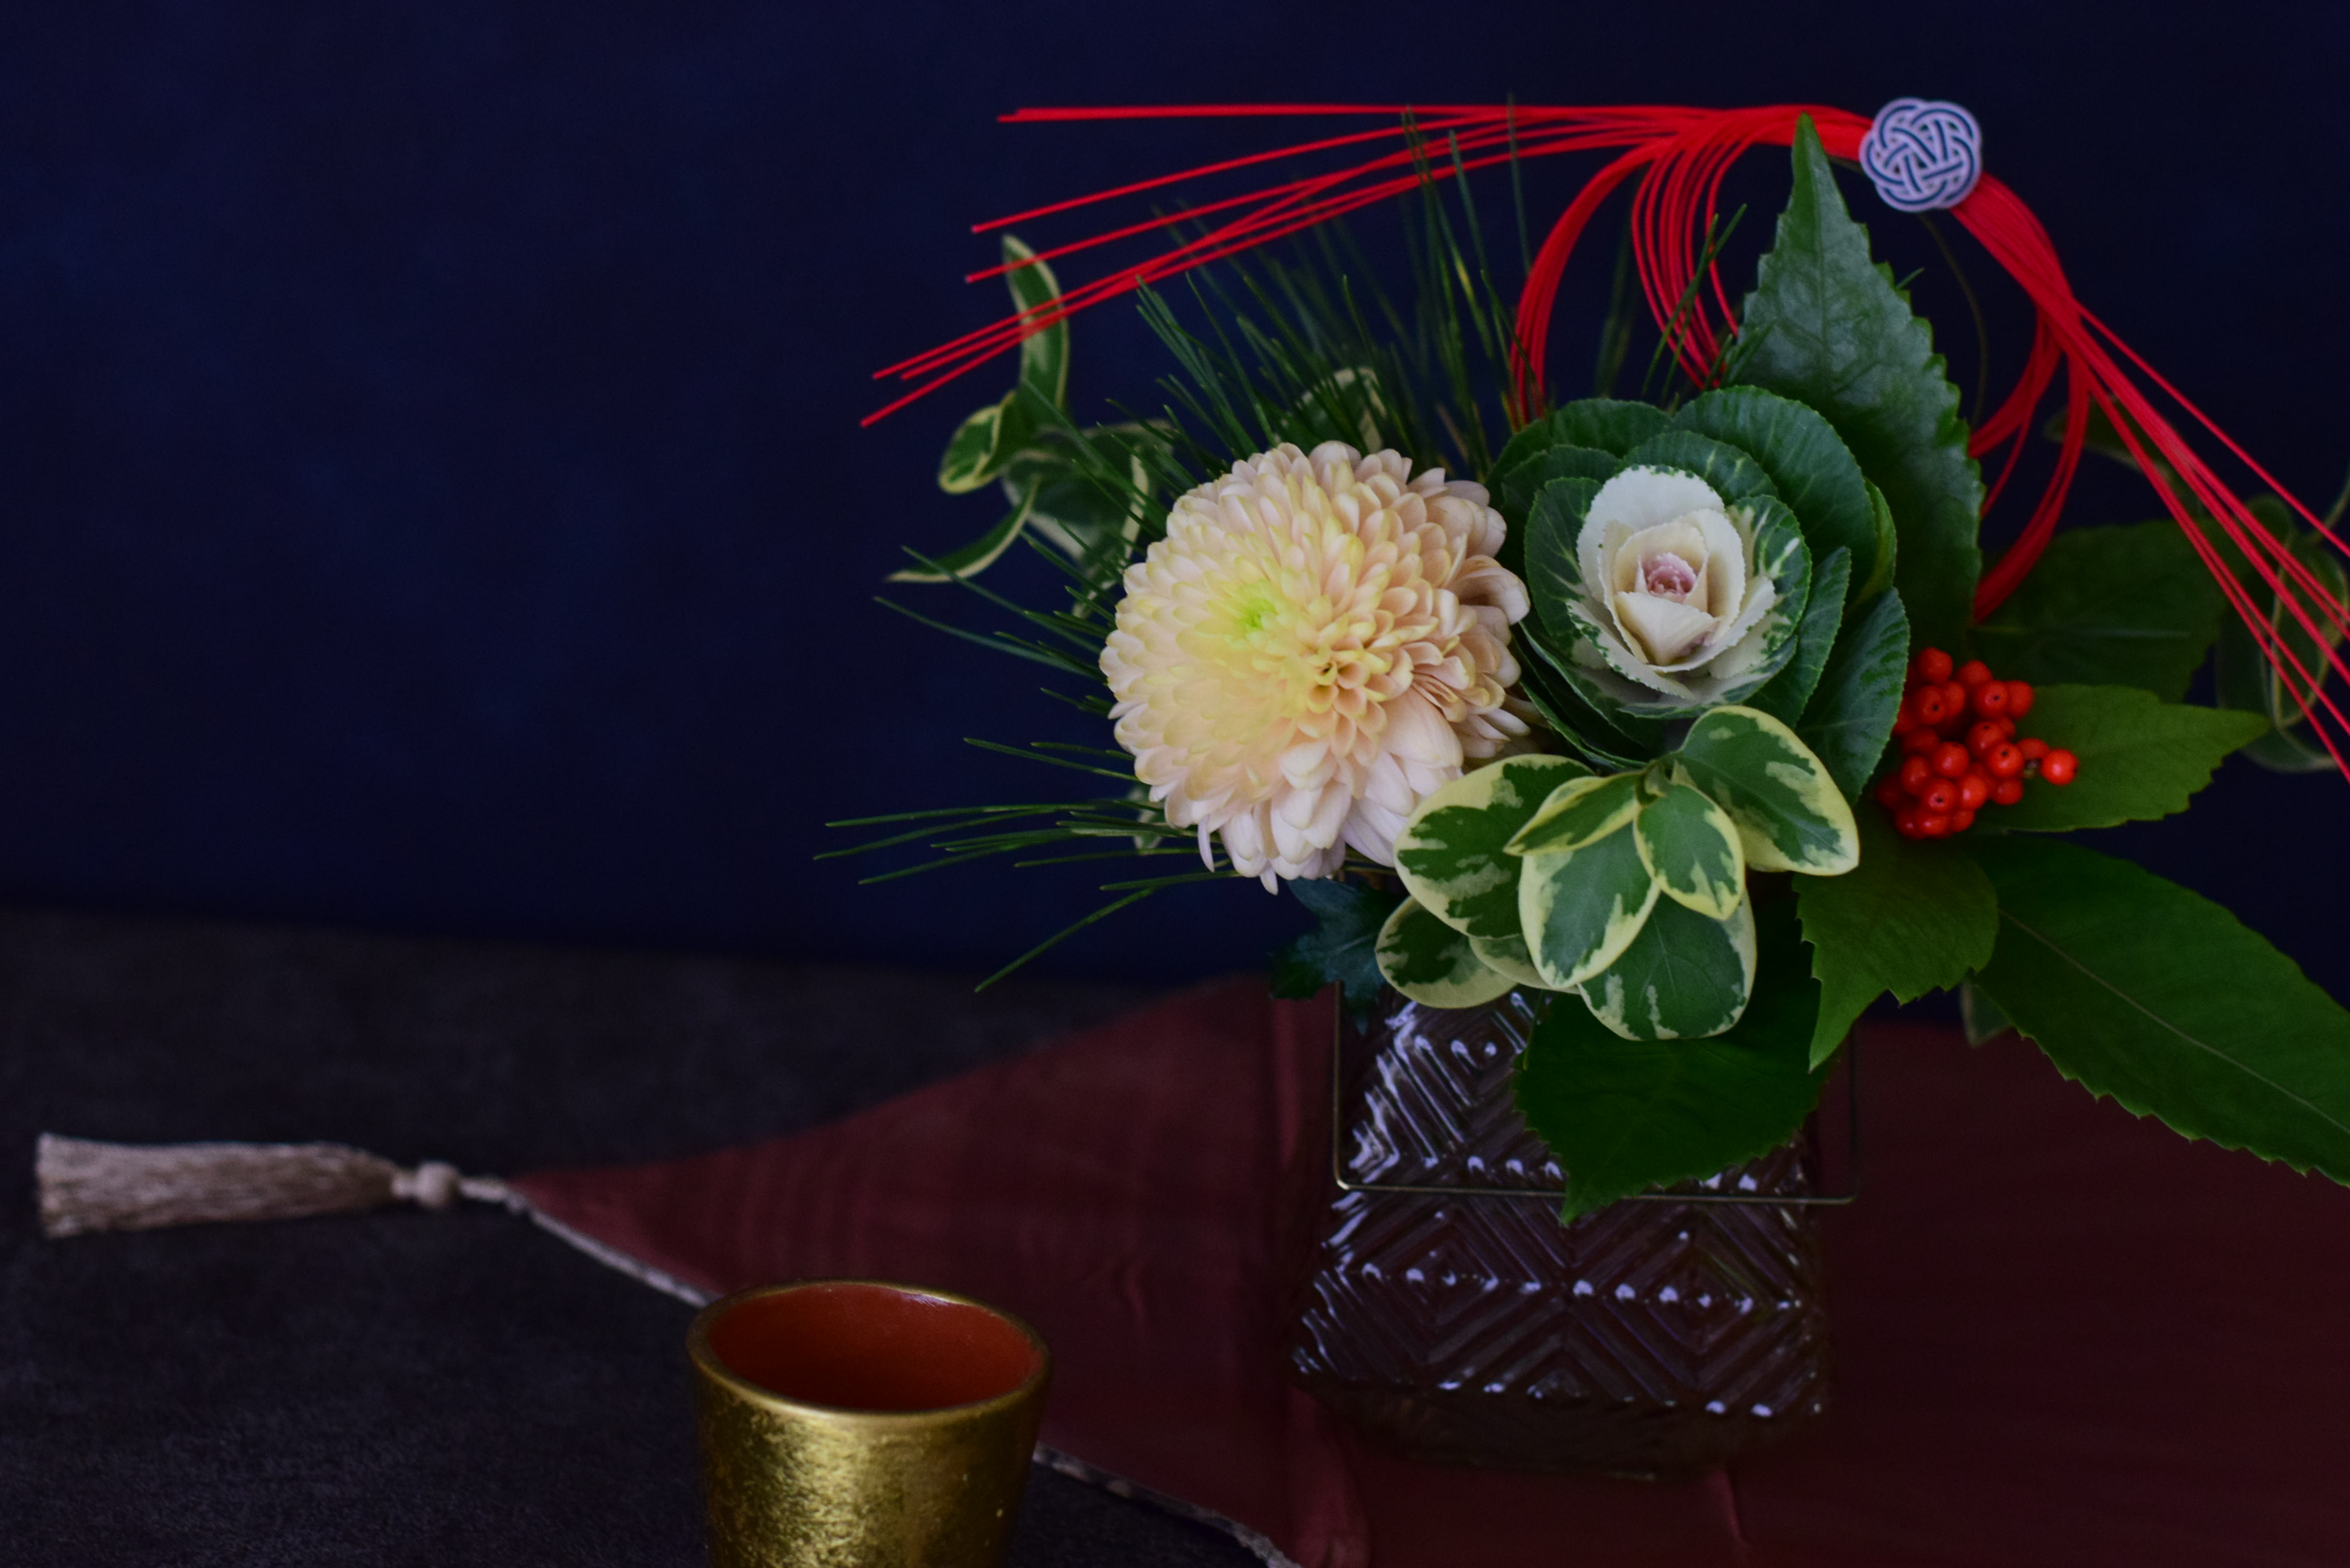 お正月の花 菊 千両 葉ボタンのお正月の花を使ったフラワーアレンジメント フラワーアレンジメント教室 横浜